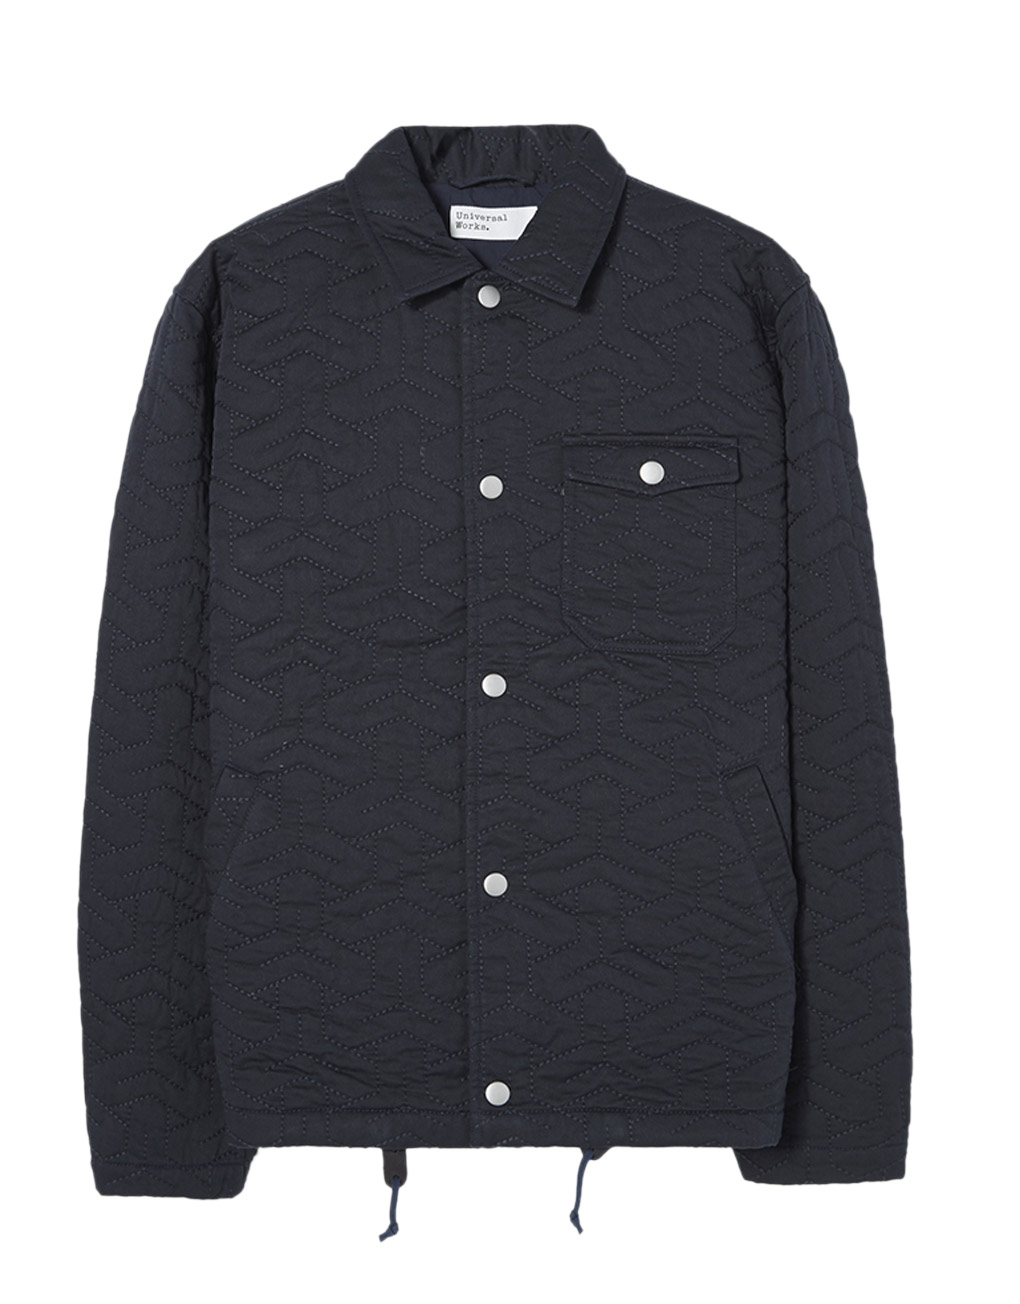 Universal Works – Coach jacket in sashiko quilt twill navy